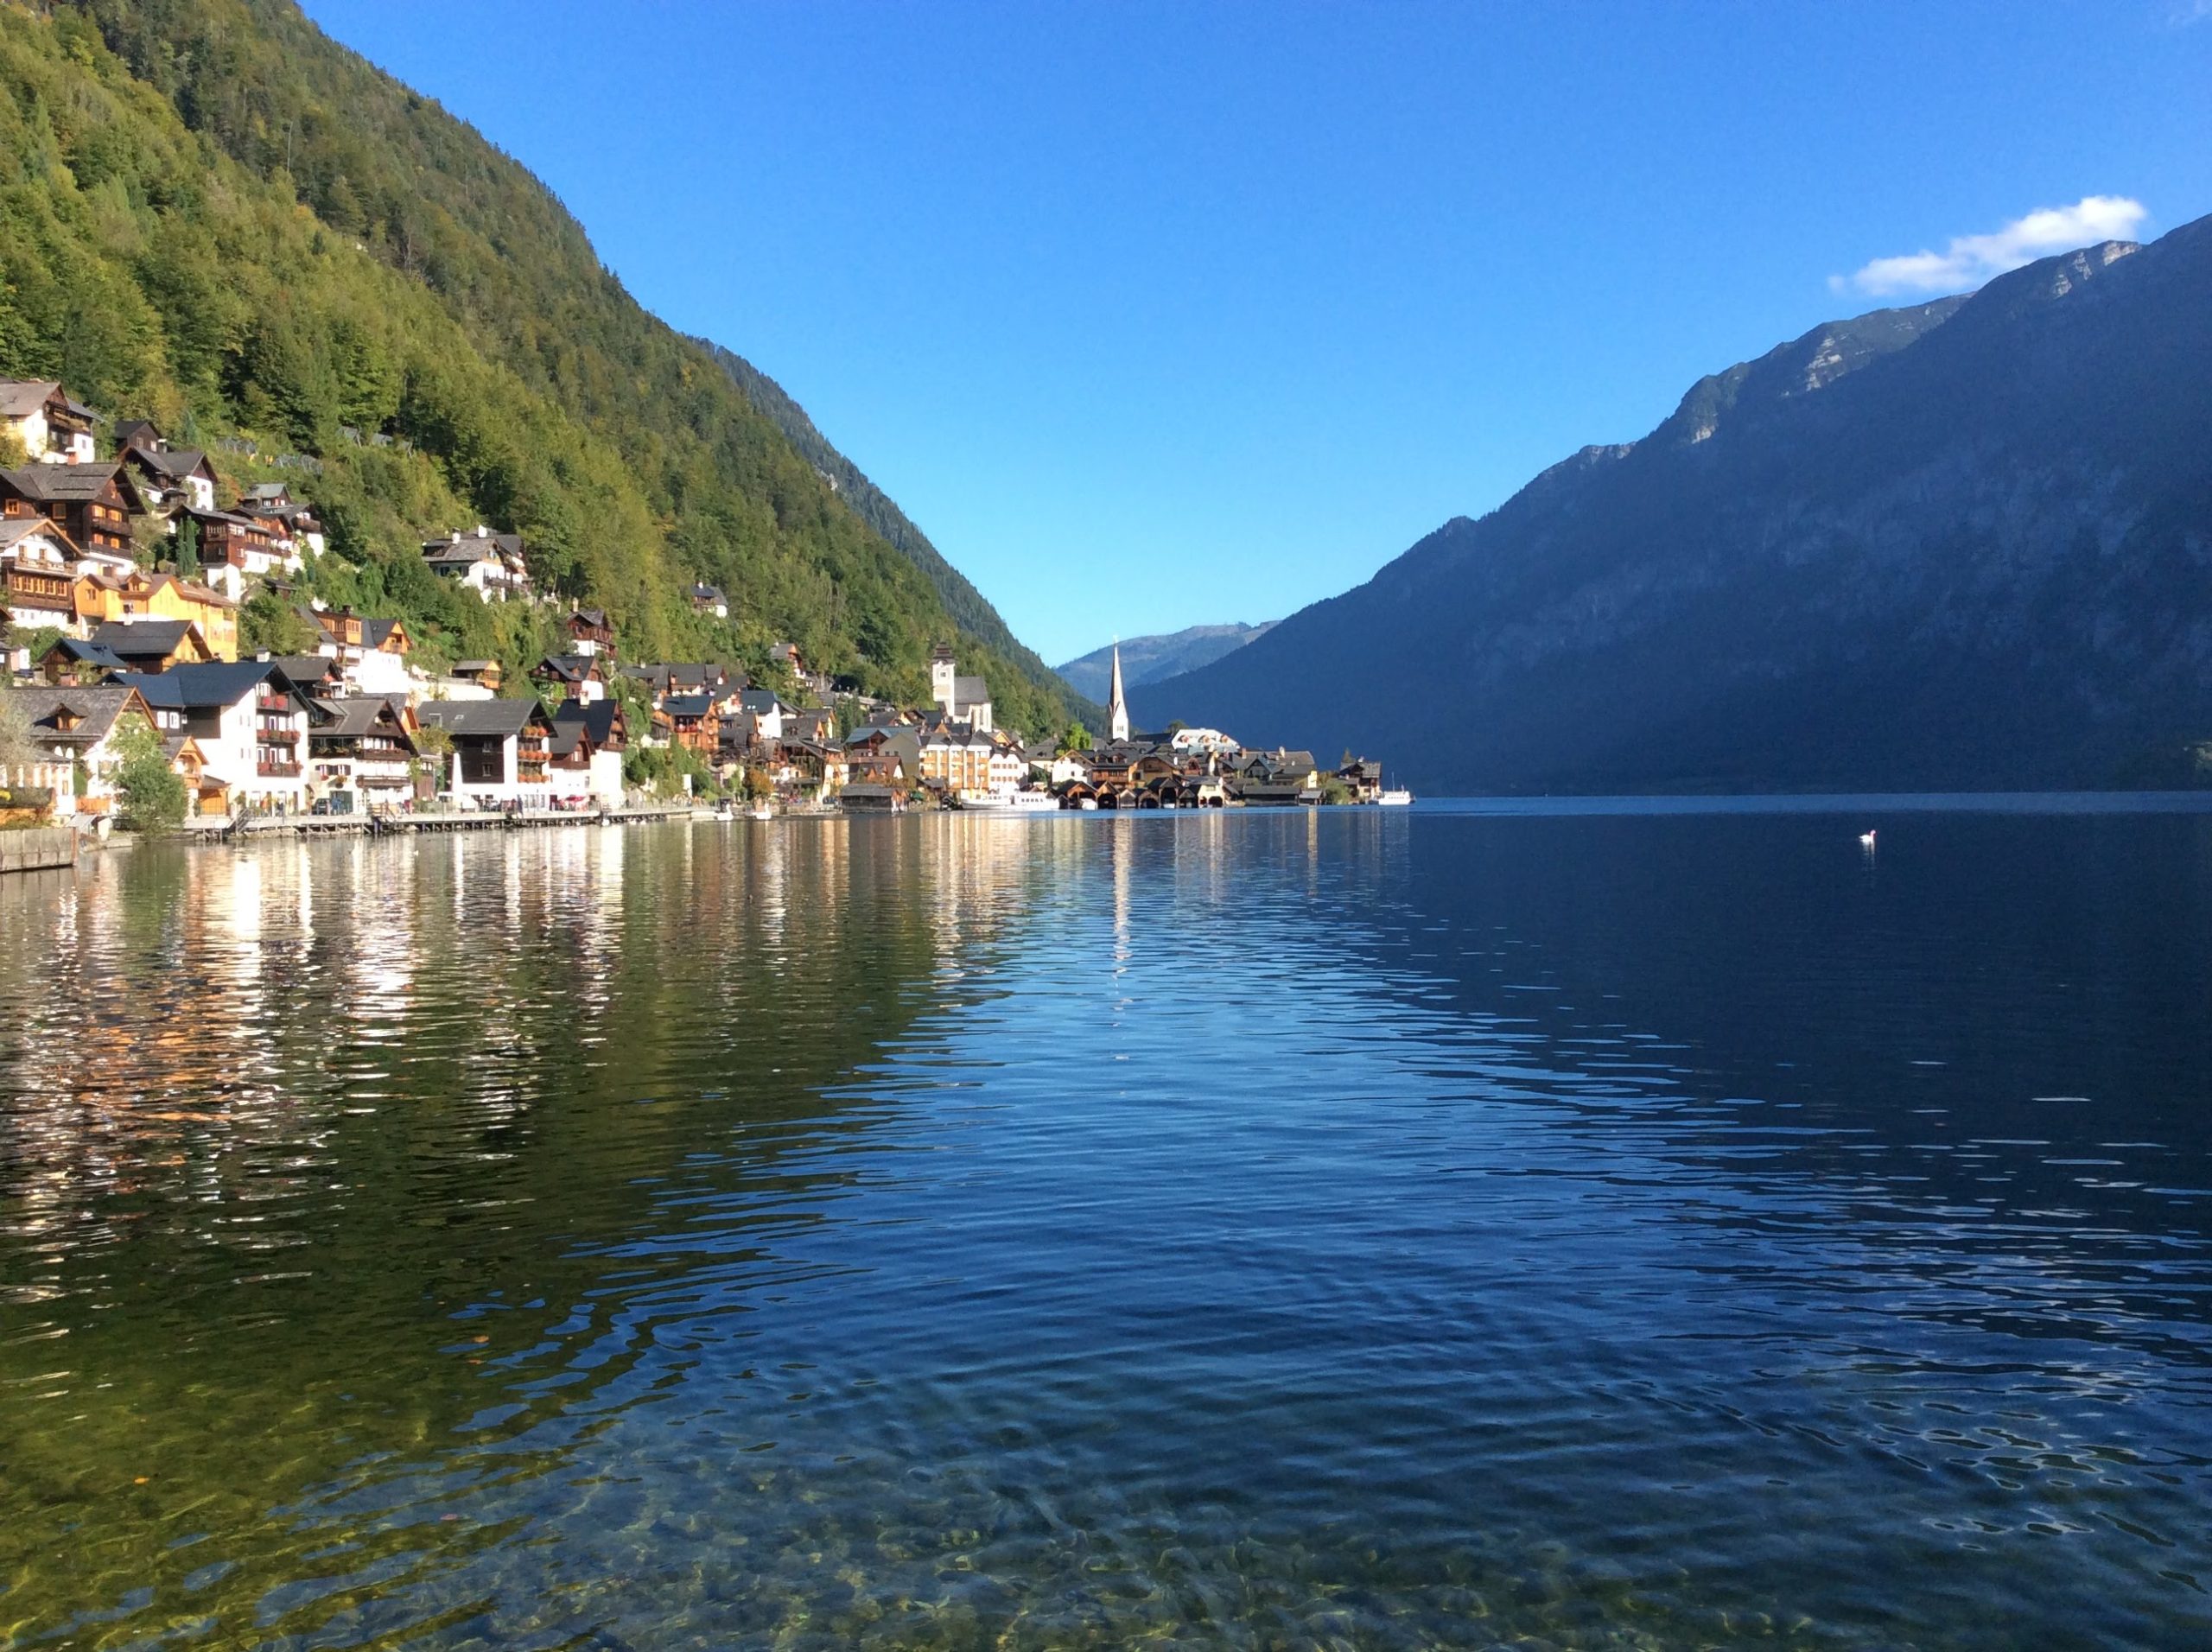 オーストリア 美しい湖と山の風景ハルシュタット 塩と先史時代 何度でも海外旅行 旅プロおすすめの国